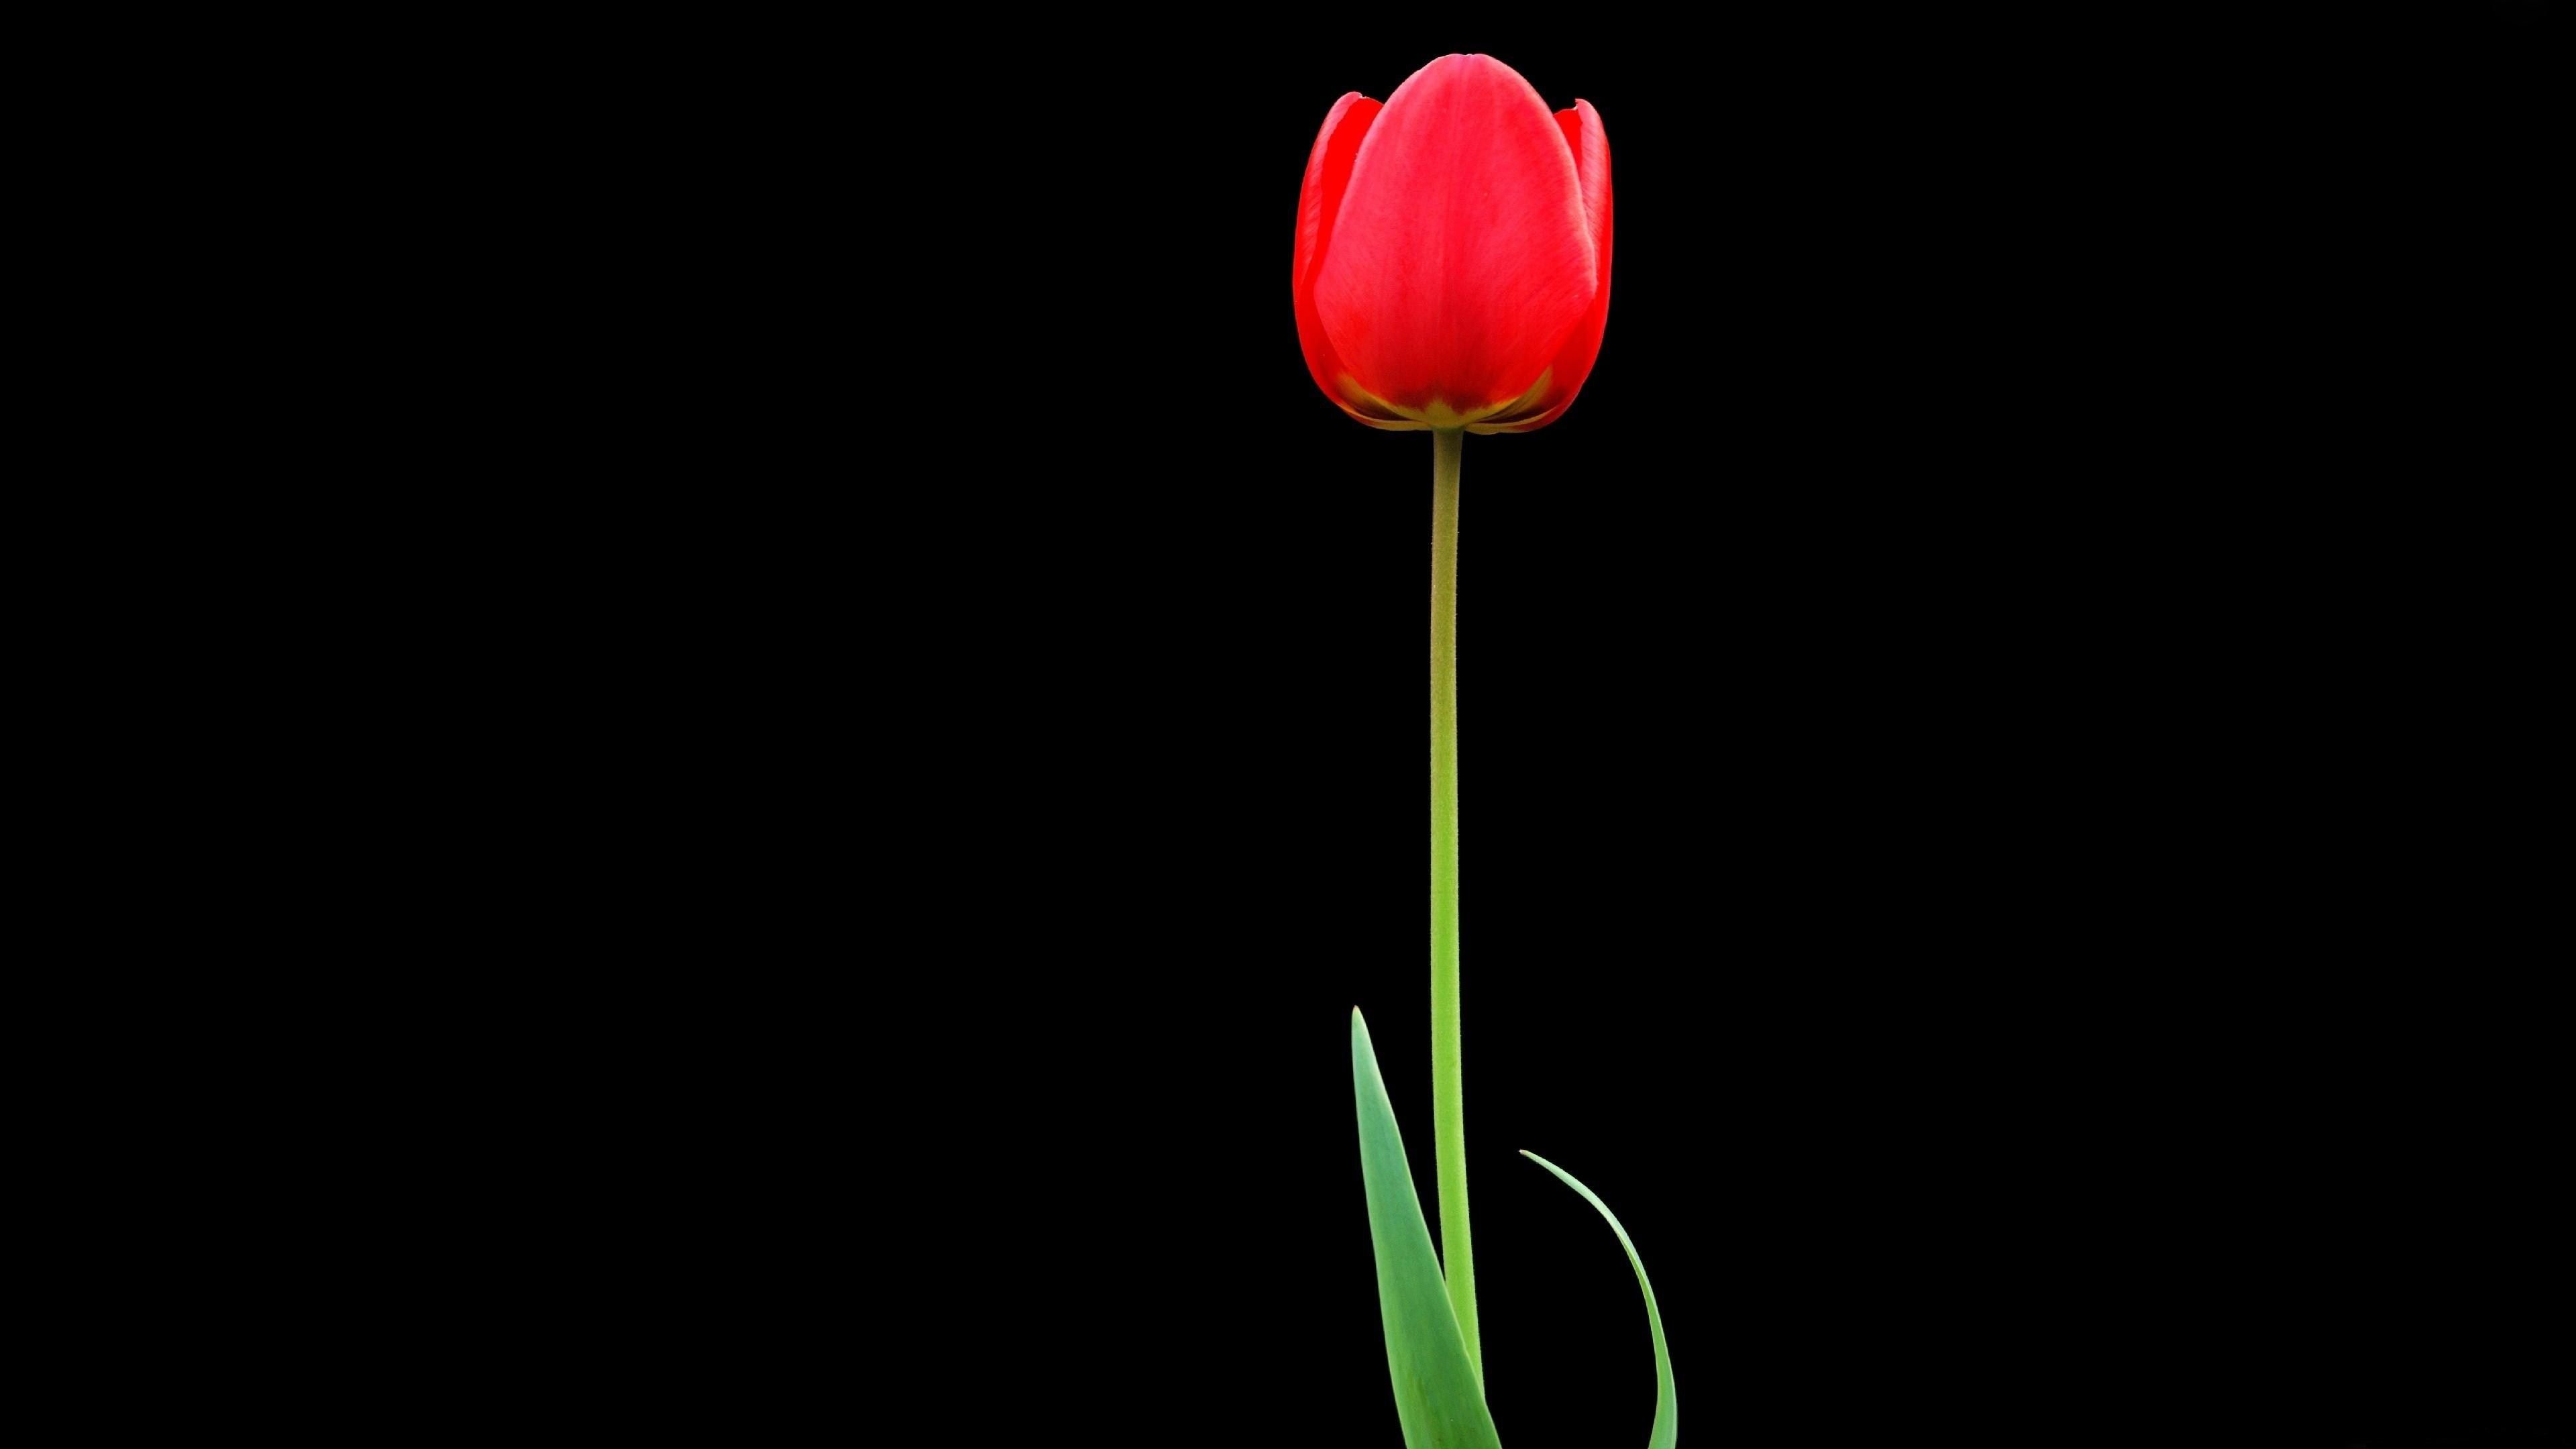 Tulip Red Flower 4K Ultra HD Wallpaper [3840x2160]